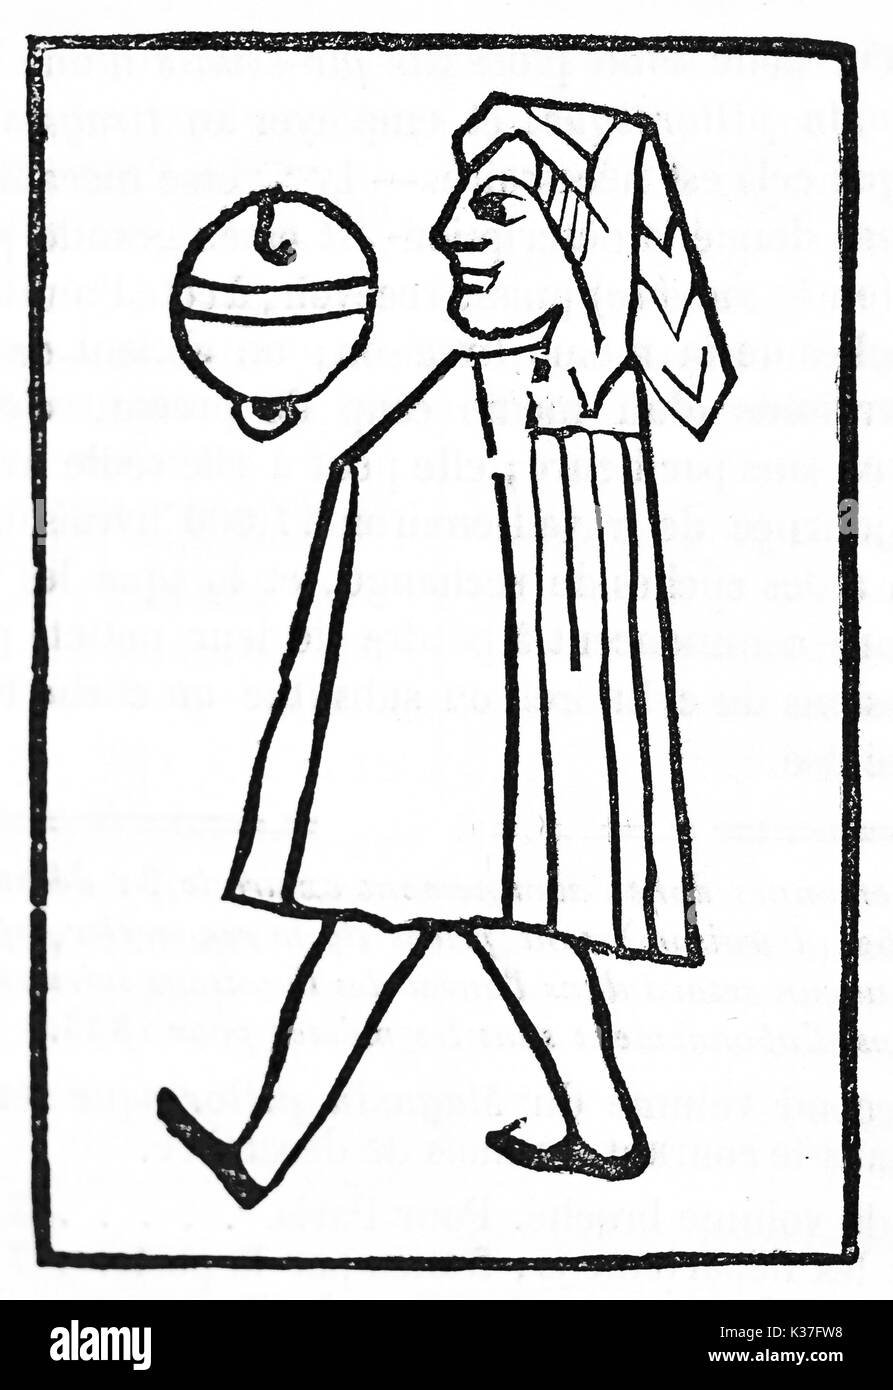 Ancienne carte à jouer Jack réalisé dans un style d'icône médiévale minimale. Vieille Illustration d'auteur non identifié publié le magasin pittoresque Paris 1834 Banque D'Images